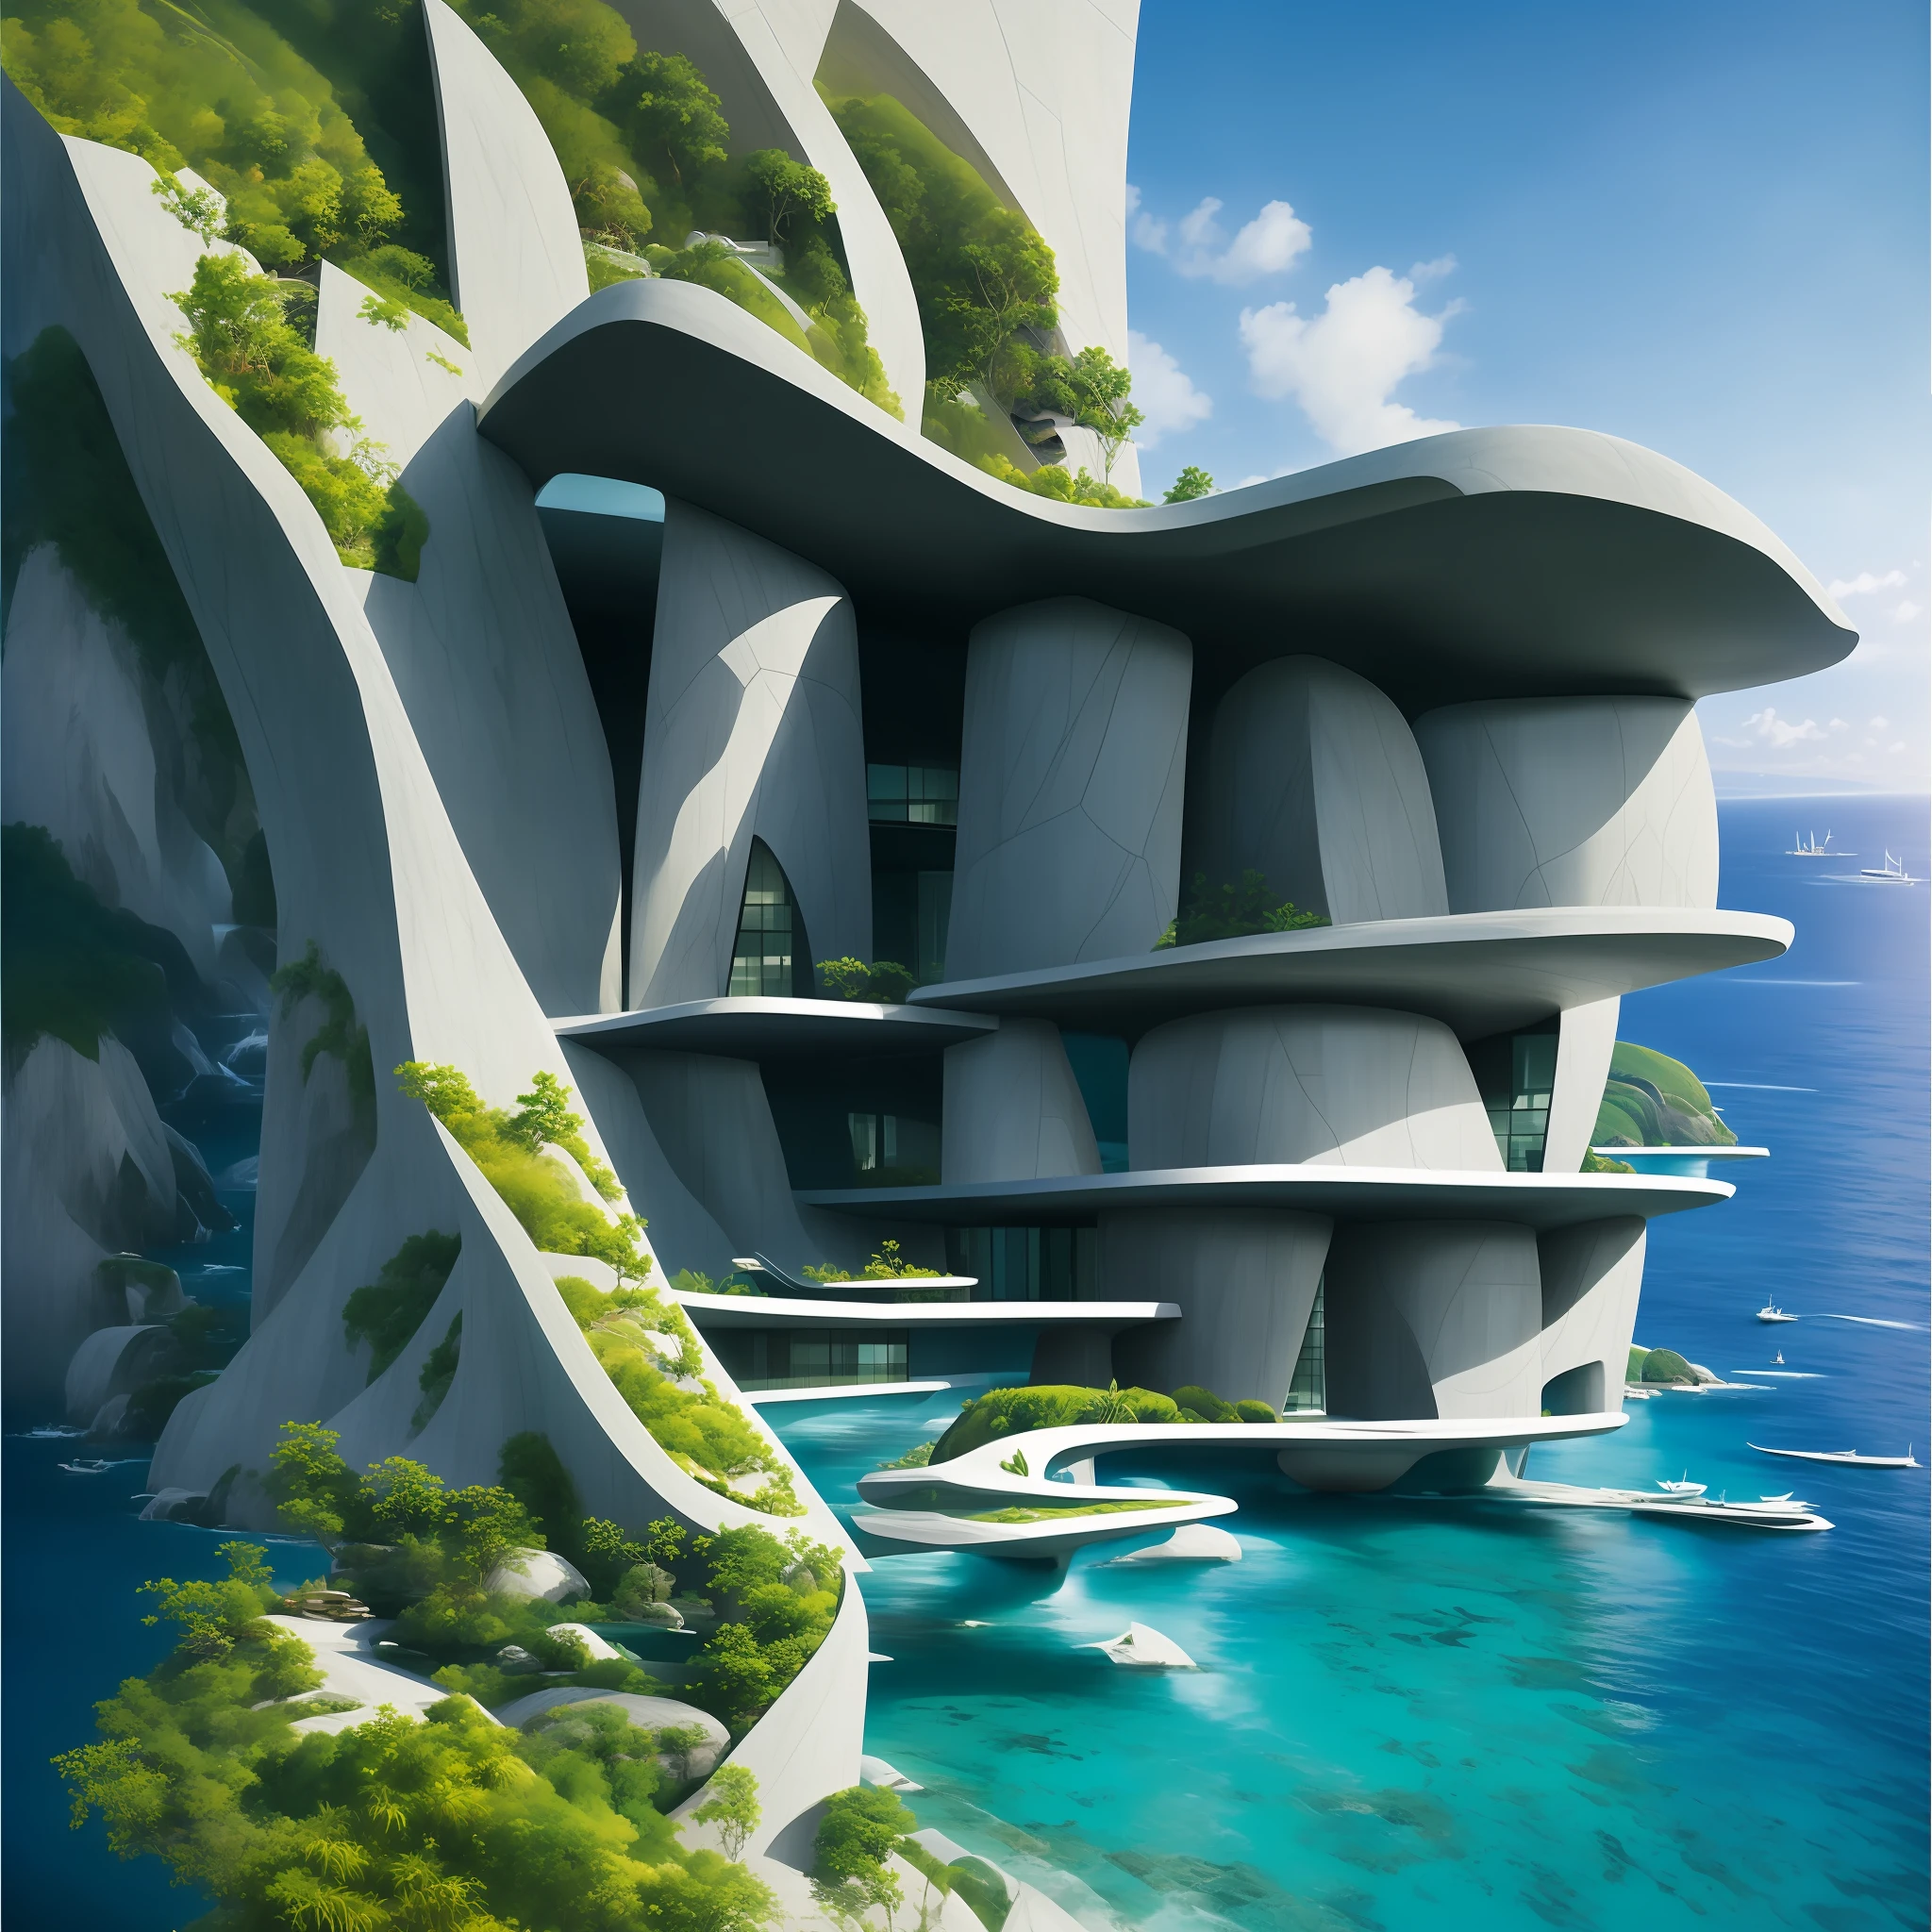 現代未來派設計的大型懸崖房屋，中間有人工瀑布和水池, 自然與建築相遇, 圍繞藍海而建, 現實的蜂巢建築, 有機建築, 非常接近真實的自然, 令人驚嘆的渲染, 有洞穴的島嶼, 令人驚嘆的建築, 豪華建築, 現實幻想渲染, by Zha Shibiao, 史詩般的和令人驚嘆的, 建築視覺化, 史詩建築, 概念藝術. 8k